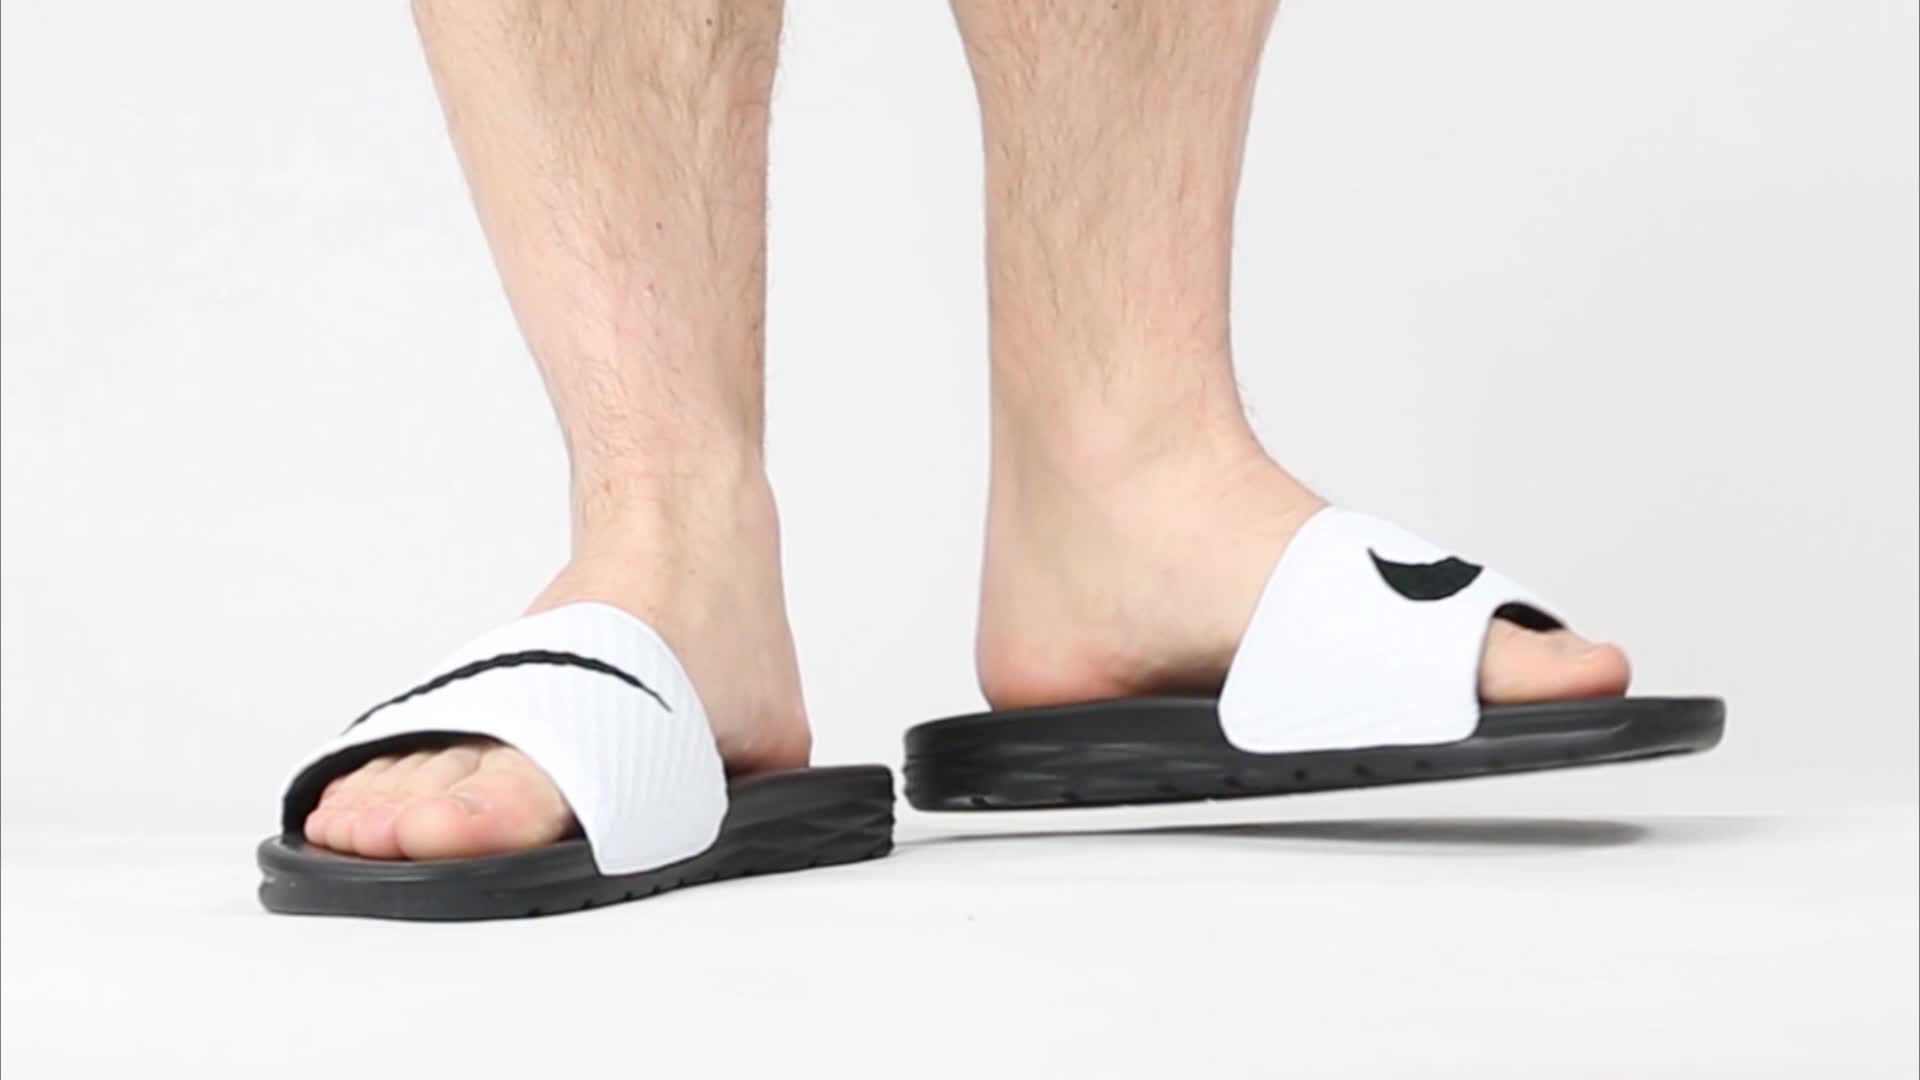 nike men's benassi solarsoft slide sandal